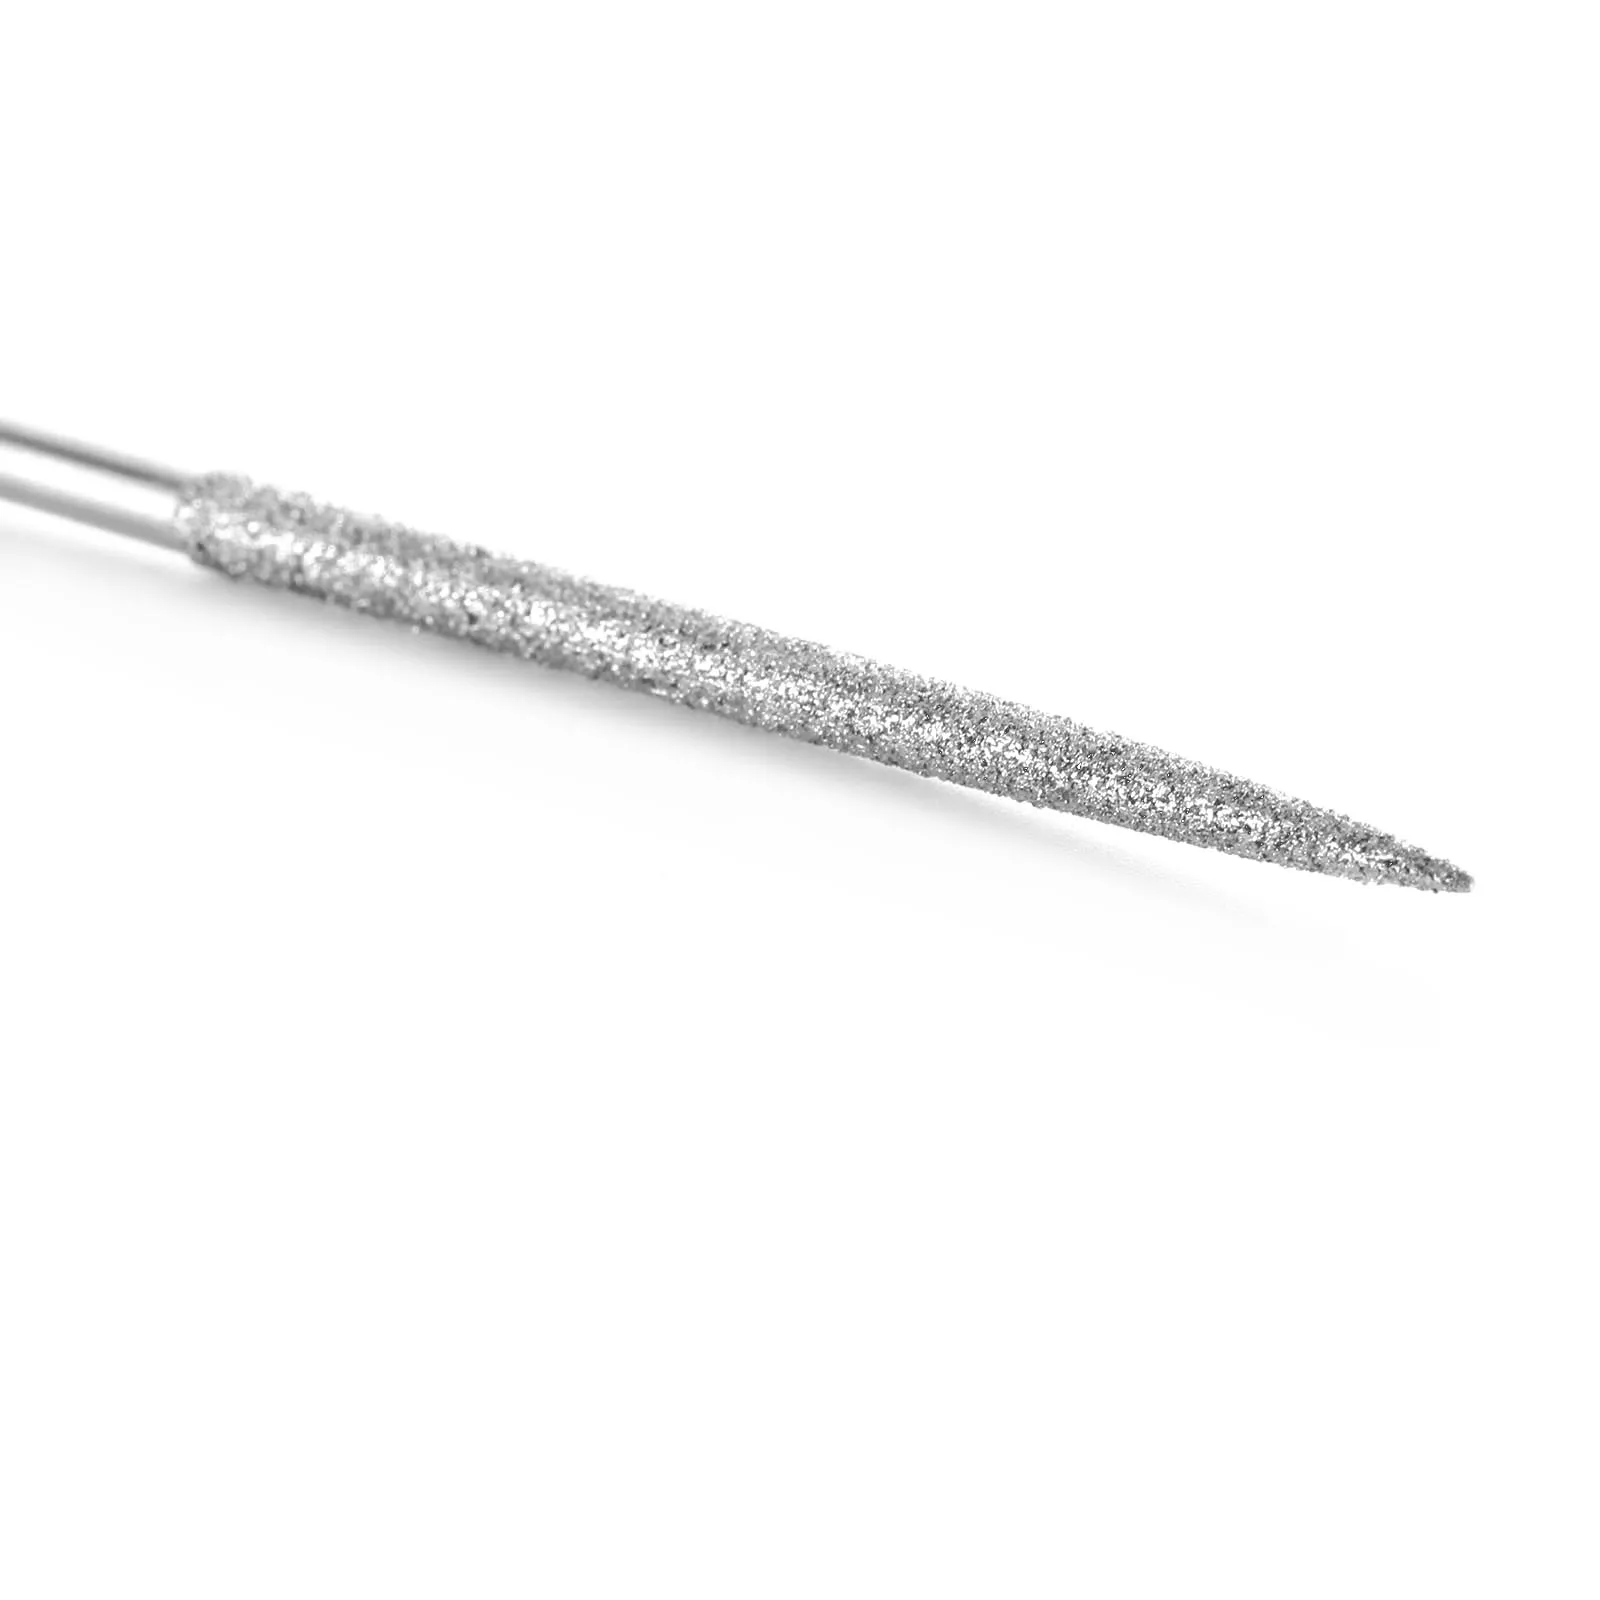 DRELD 1 шт. 140 мм Круглый Алмазный игольчатый напильник для ремонта ручных инструментов для металла, керамики, стекла, драгоценного камня, закаленная сталь, ювелирные изделия